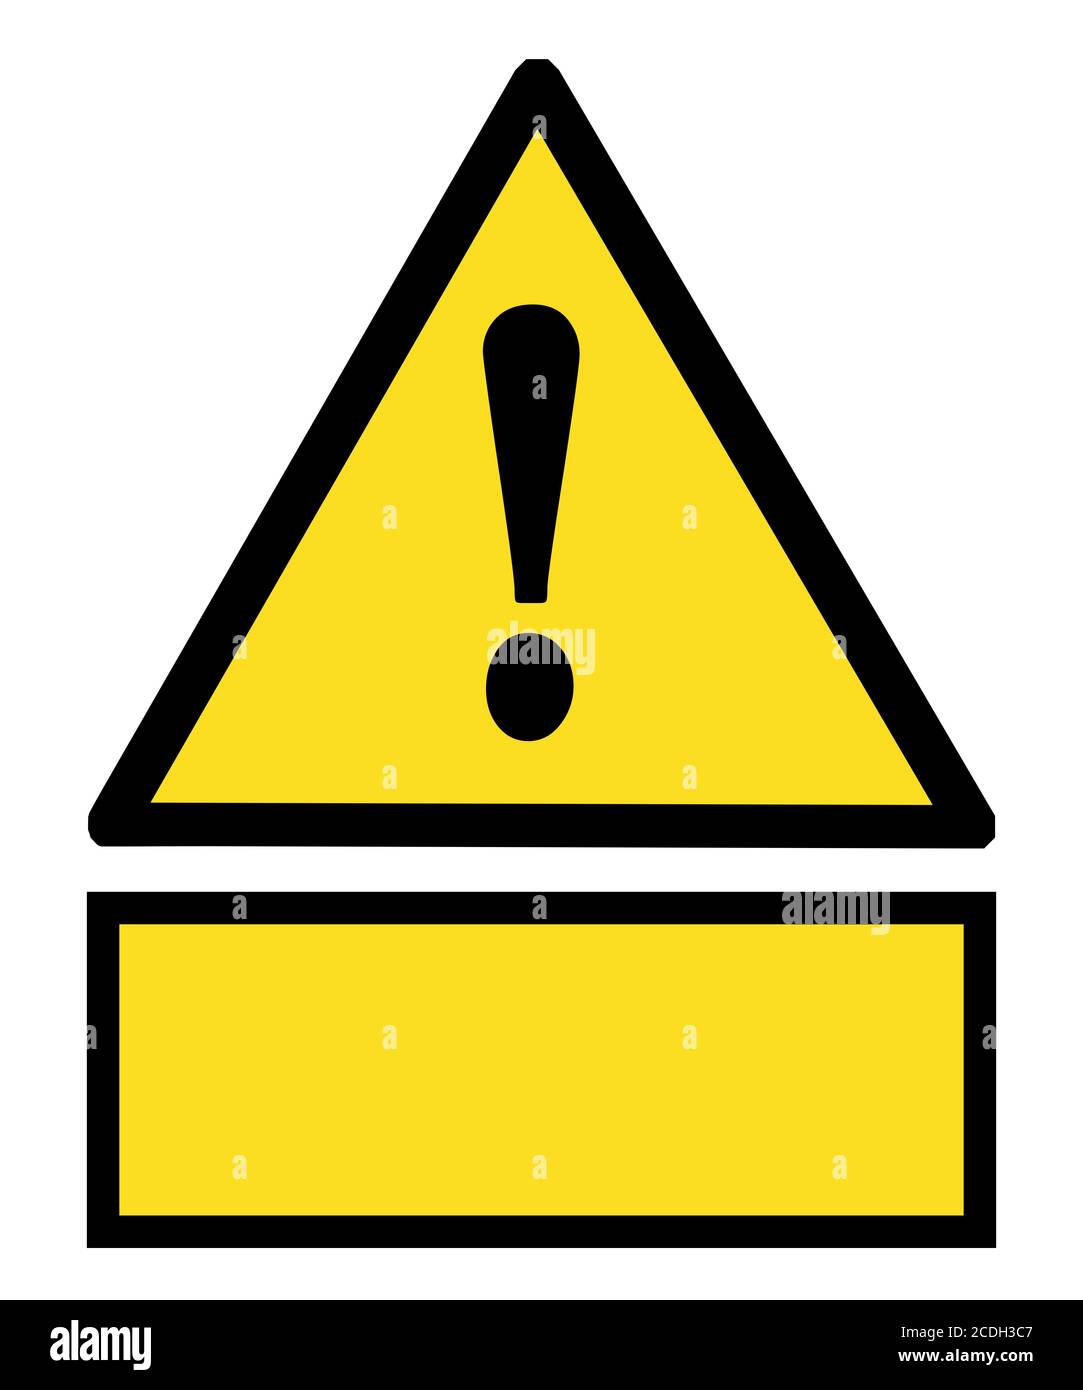 triangle de signe jaune symbole de danger et point d'exclamation avec bannière jaune vide espace de copie pour le texte, symbole sur l'objet sur fond blanc Banque D'Images